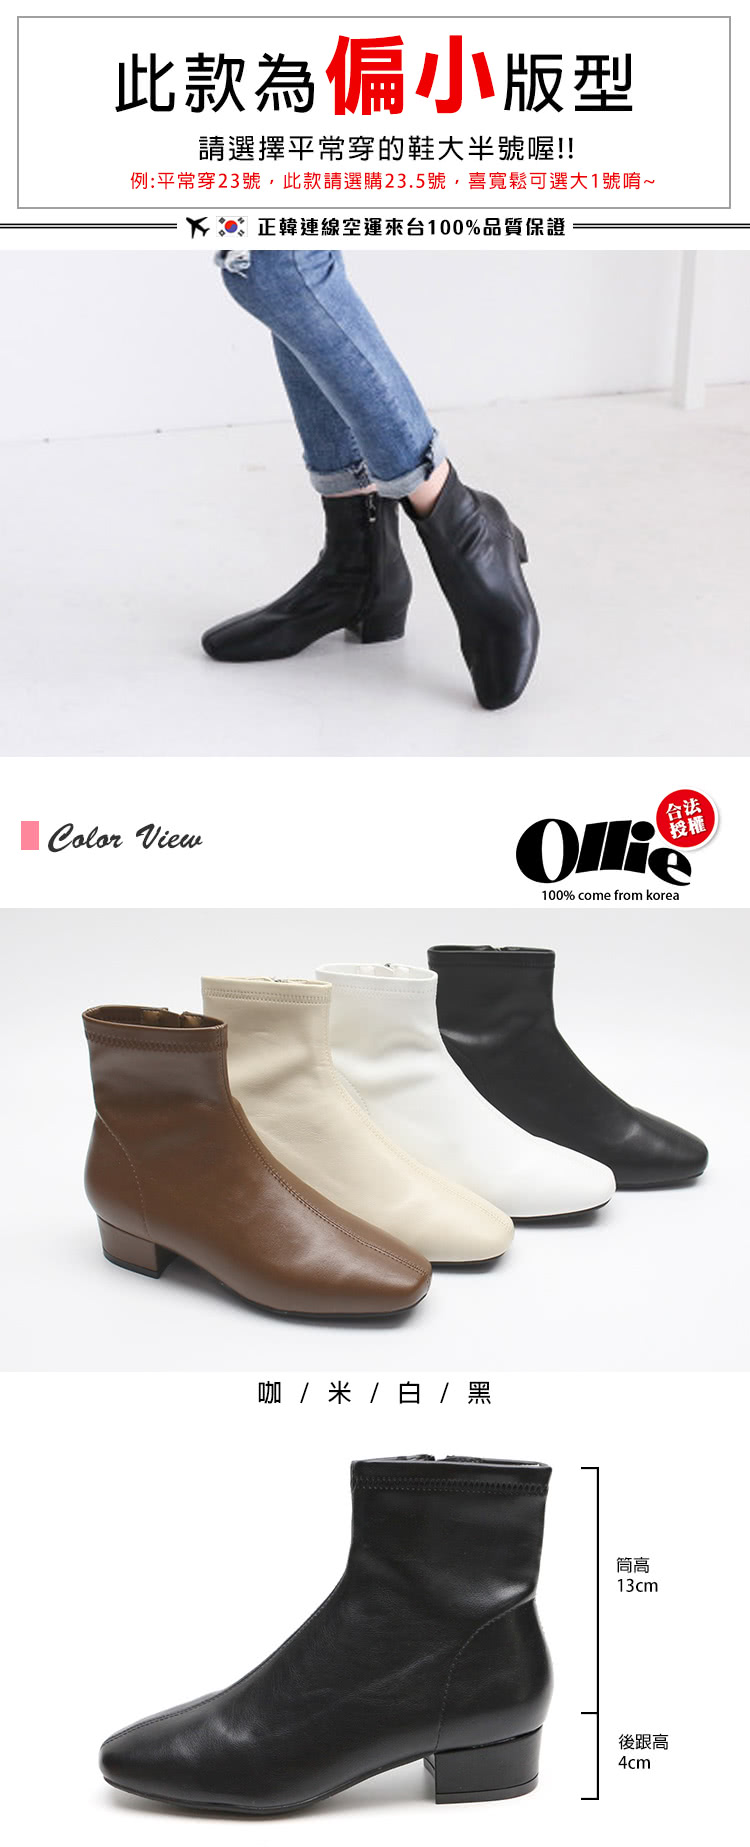 OLLIE 韓國空運。美型粗中跟4CM踝靴/短靴/版型偏小(